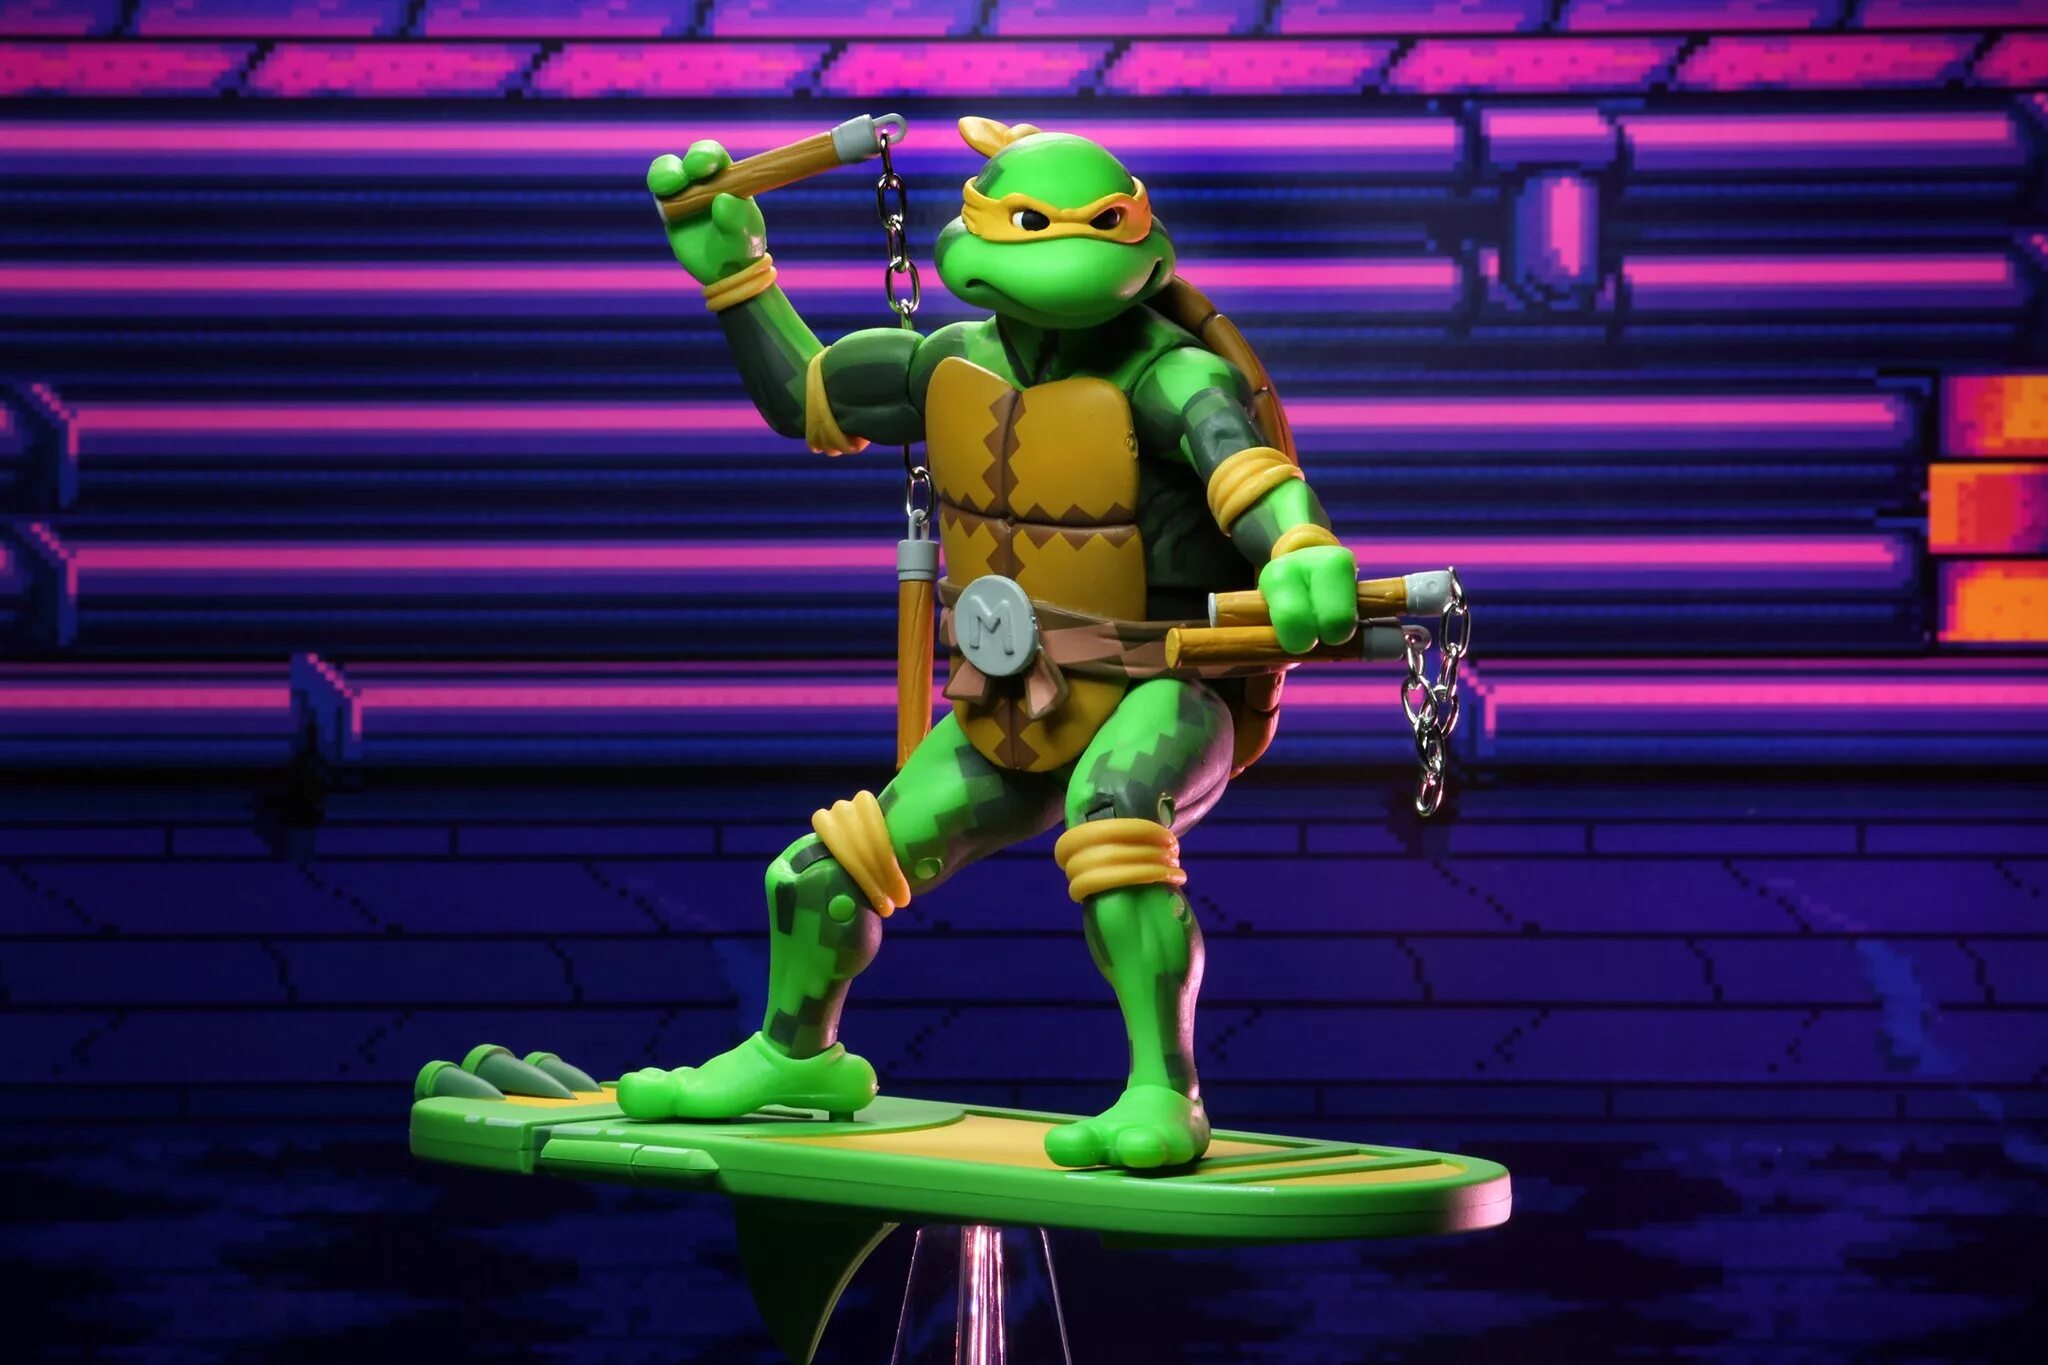 Tmnt time. Teenage Mutant Ninja Turtles Turtles in time. Микеланджело Черепашки-ниндзя. Teenage Mutant Ninja Turtles 4 Turtles in time. Черепашки ниндзя легенды Микеланджело.